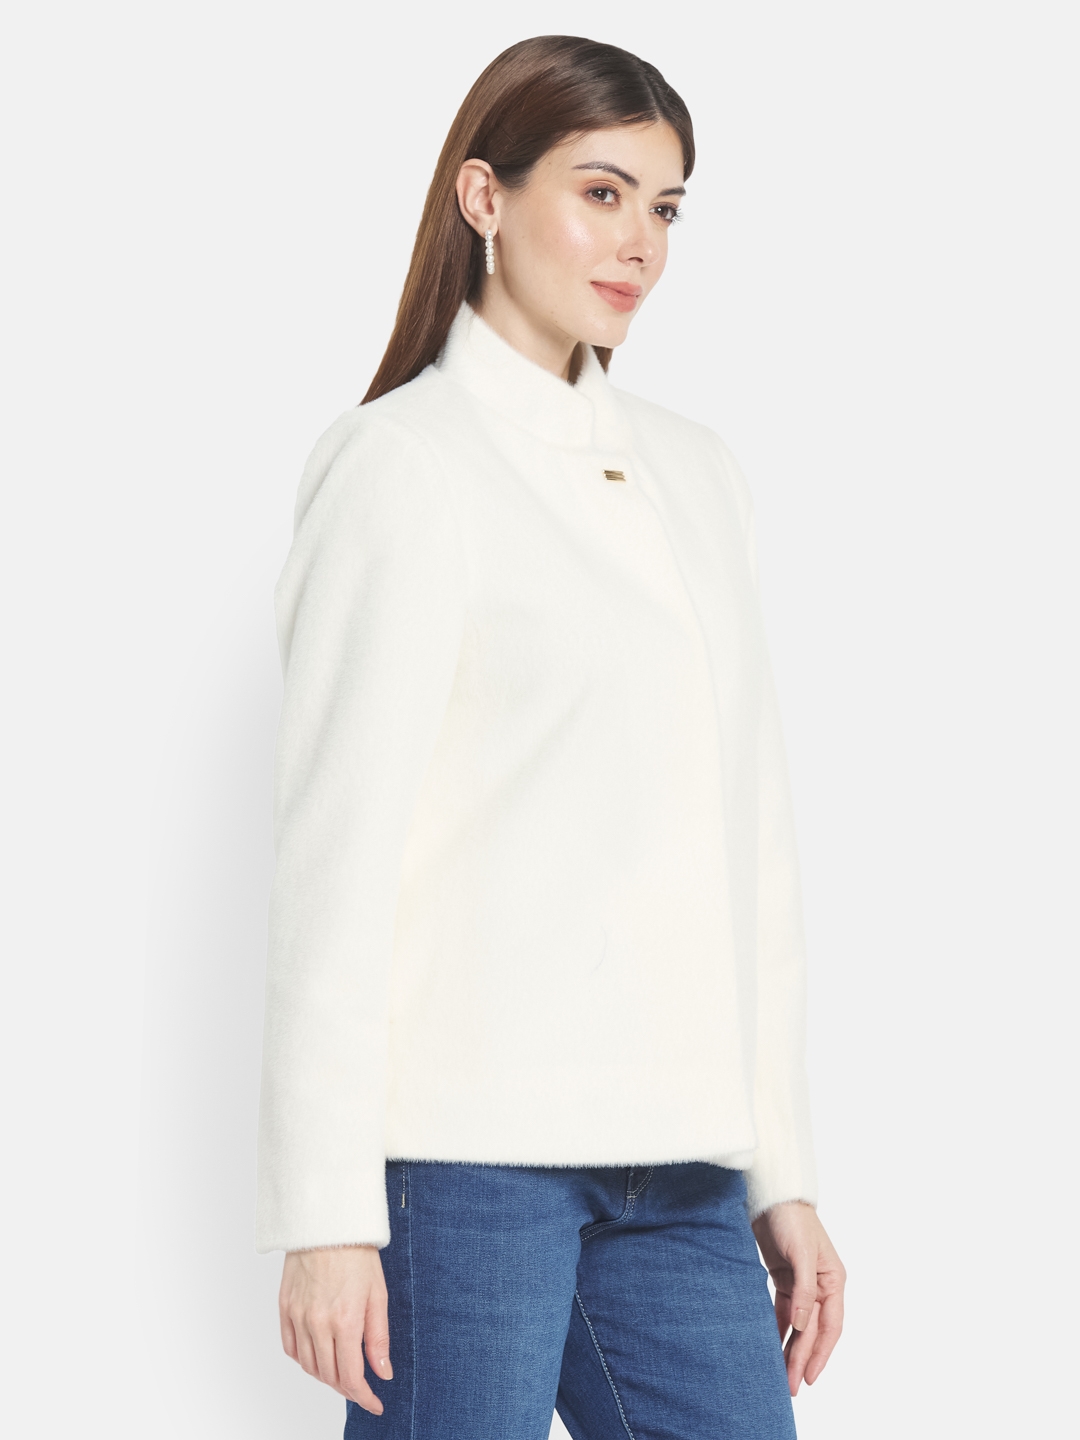 Women Jackets & Coats | Osonian Clothing